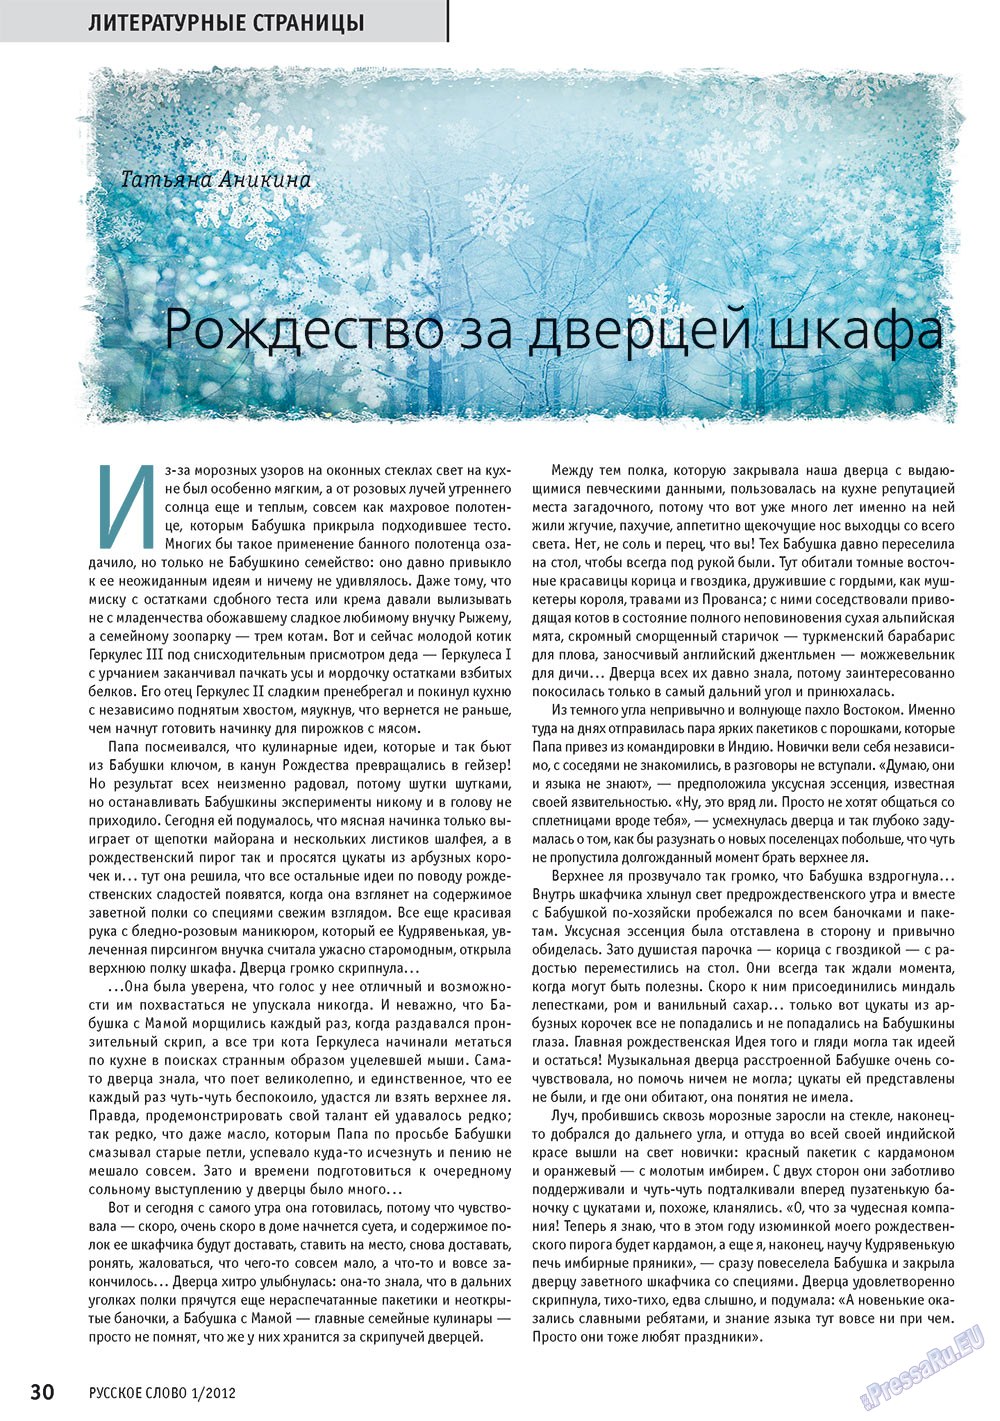 Русское слово, журнал. 2012 №1 стр.32